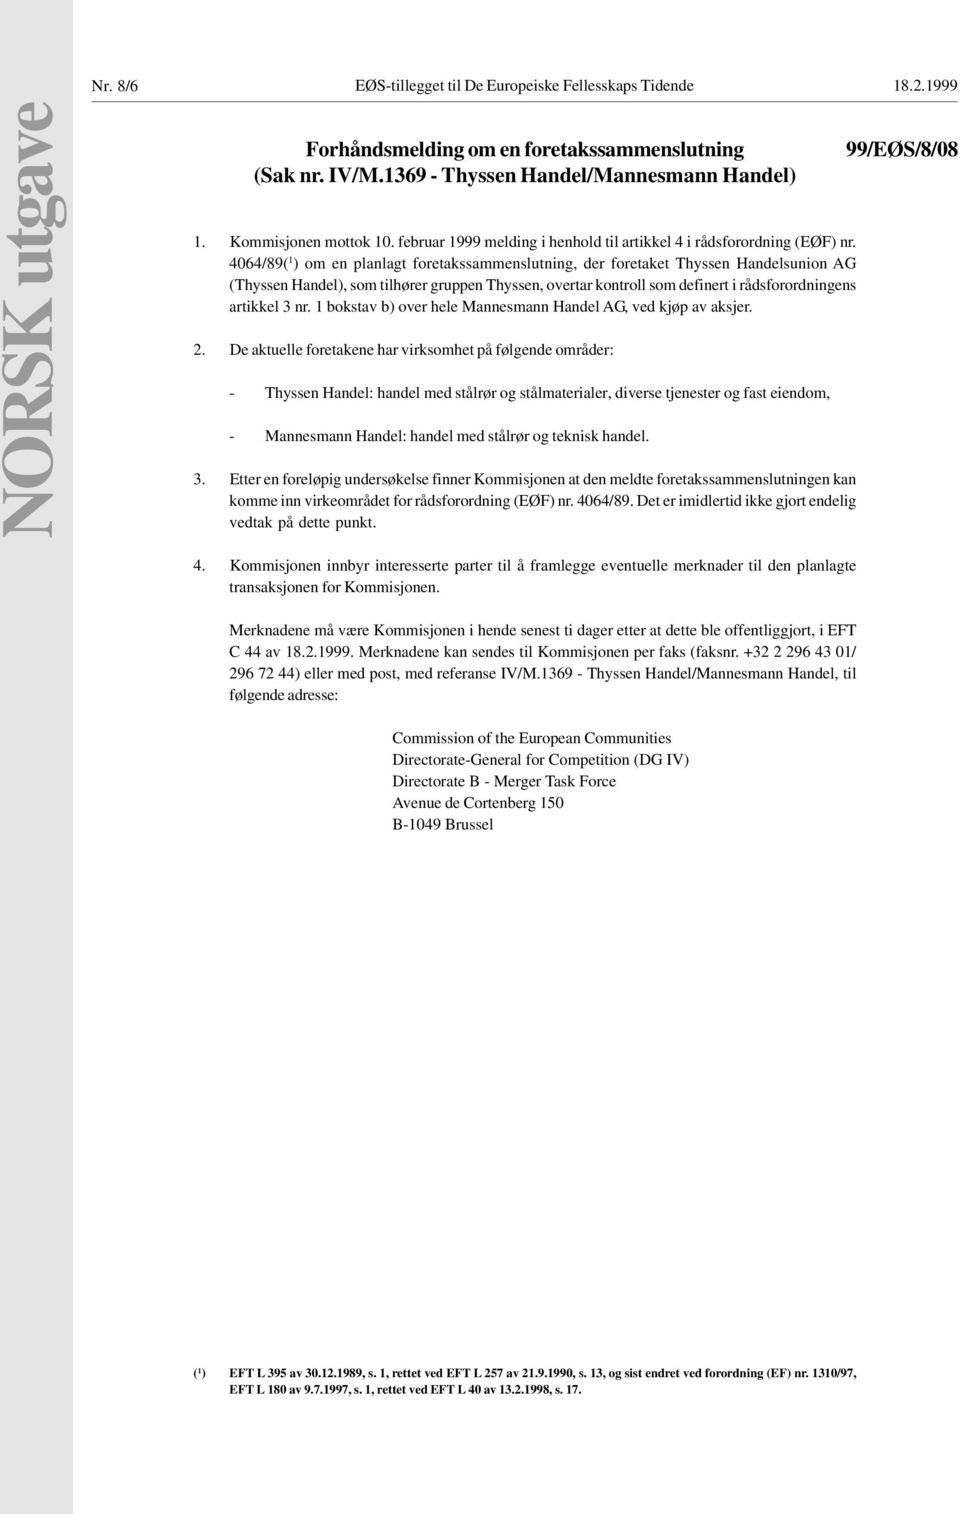 4064/89( 1 ) om en planlagt foretakssammenslutning, der foretaket Thyssen Handelsunion AG (Thyssen Handel), som tilhører gruppen Thyssen, overtar kontroll som definert i rådsforordningens artikkel 3